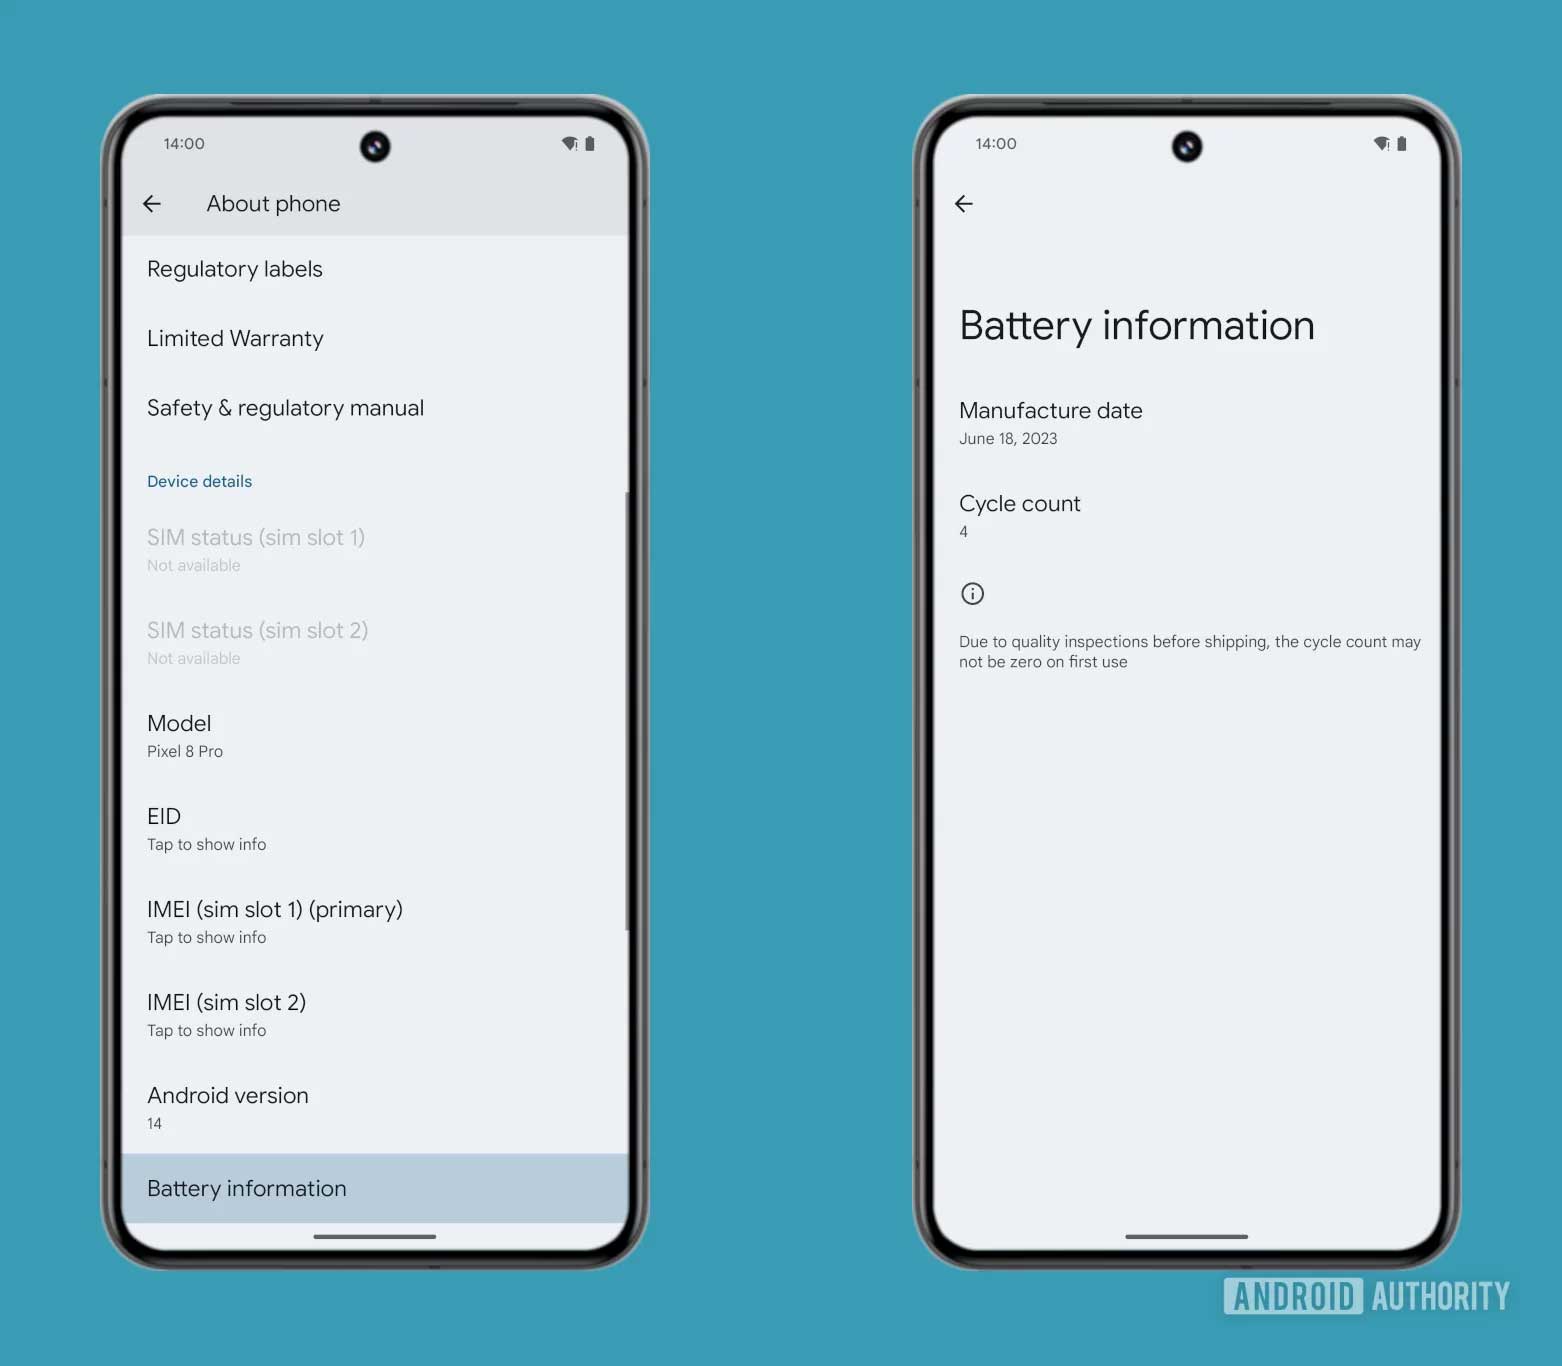 Android, Google lavora a funzione per dettagli su salute batteria come gli iPhone